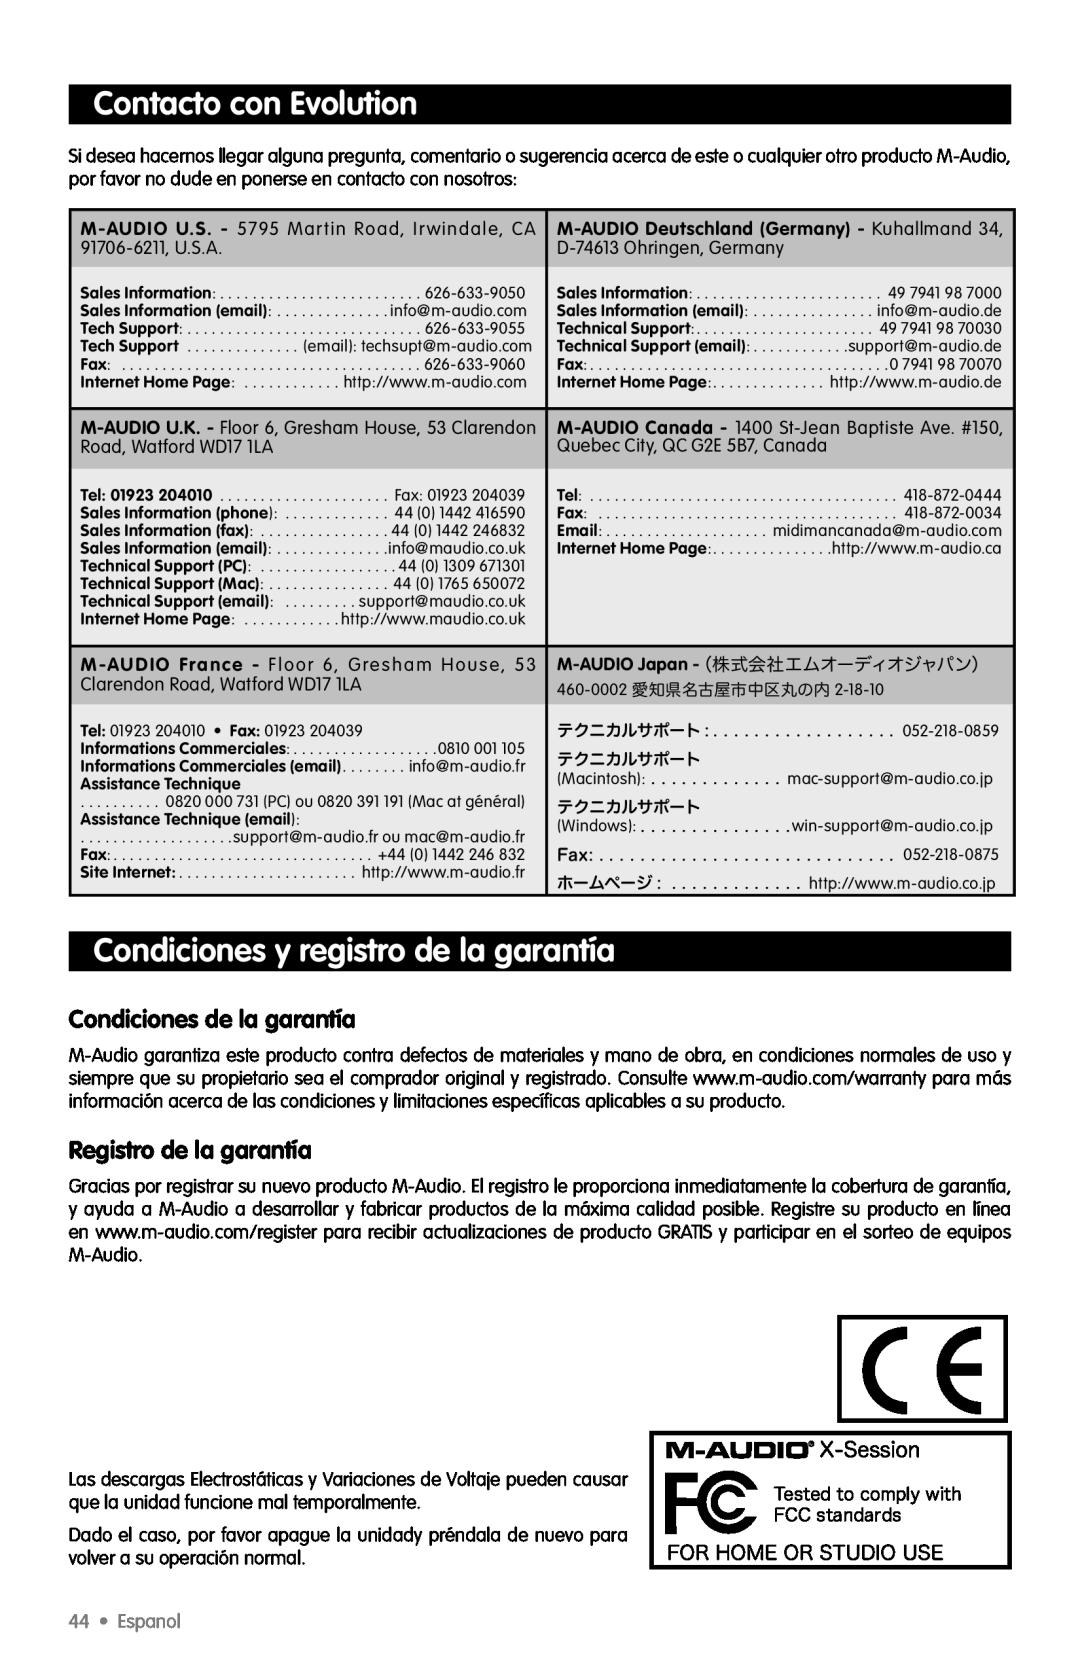 M-Audio X-Session Contacto con Evolution, Condiciones y registro de la garantía, Condiciones de la garantía, Espanol 